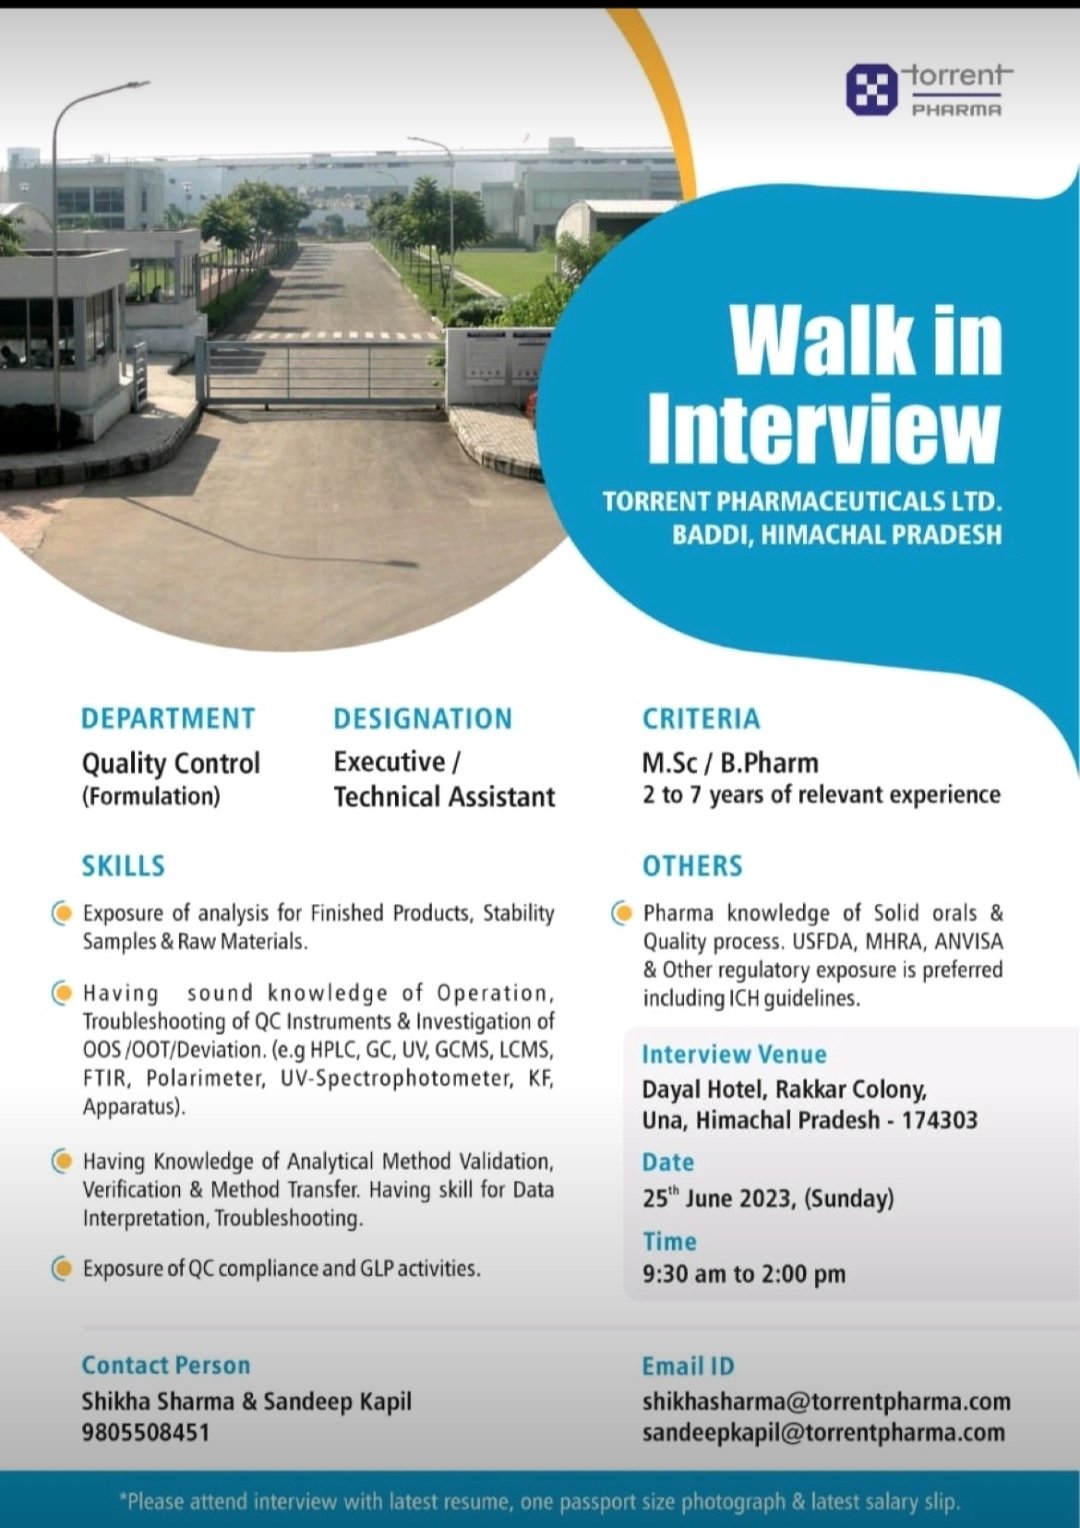 Walk-in interview